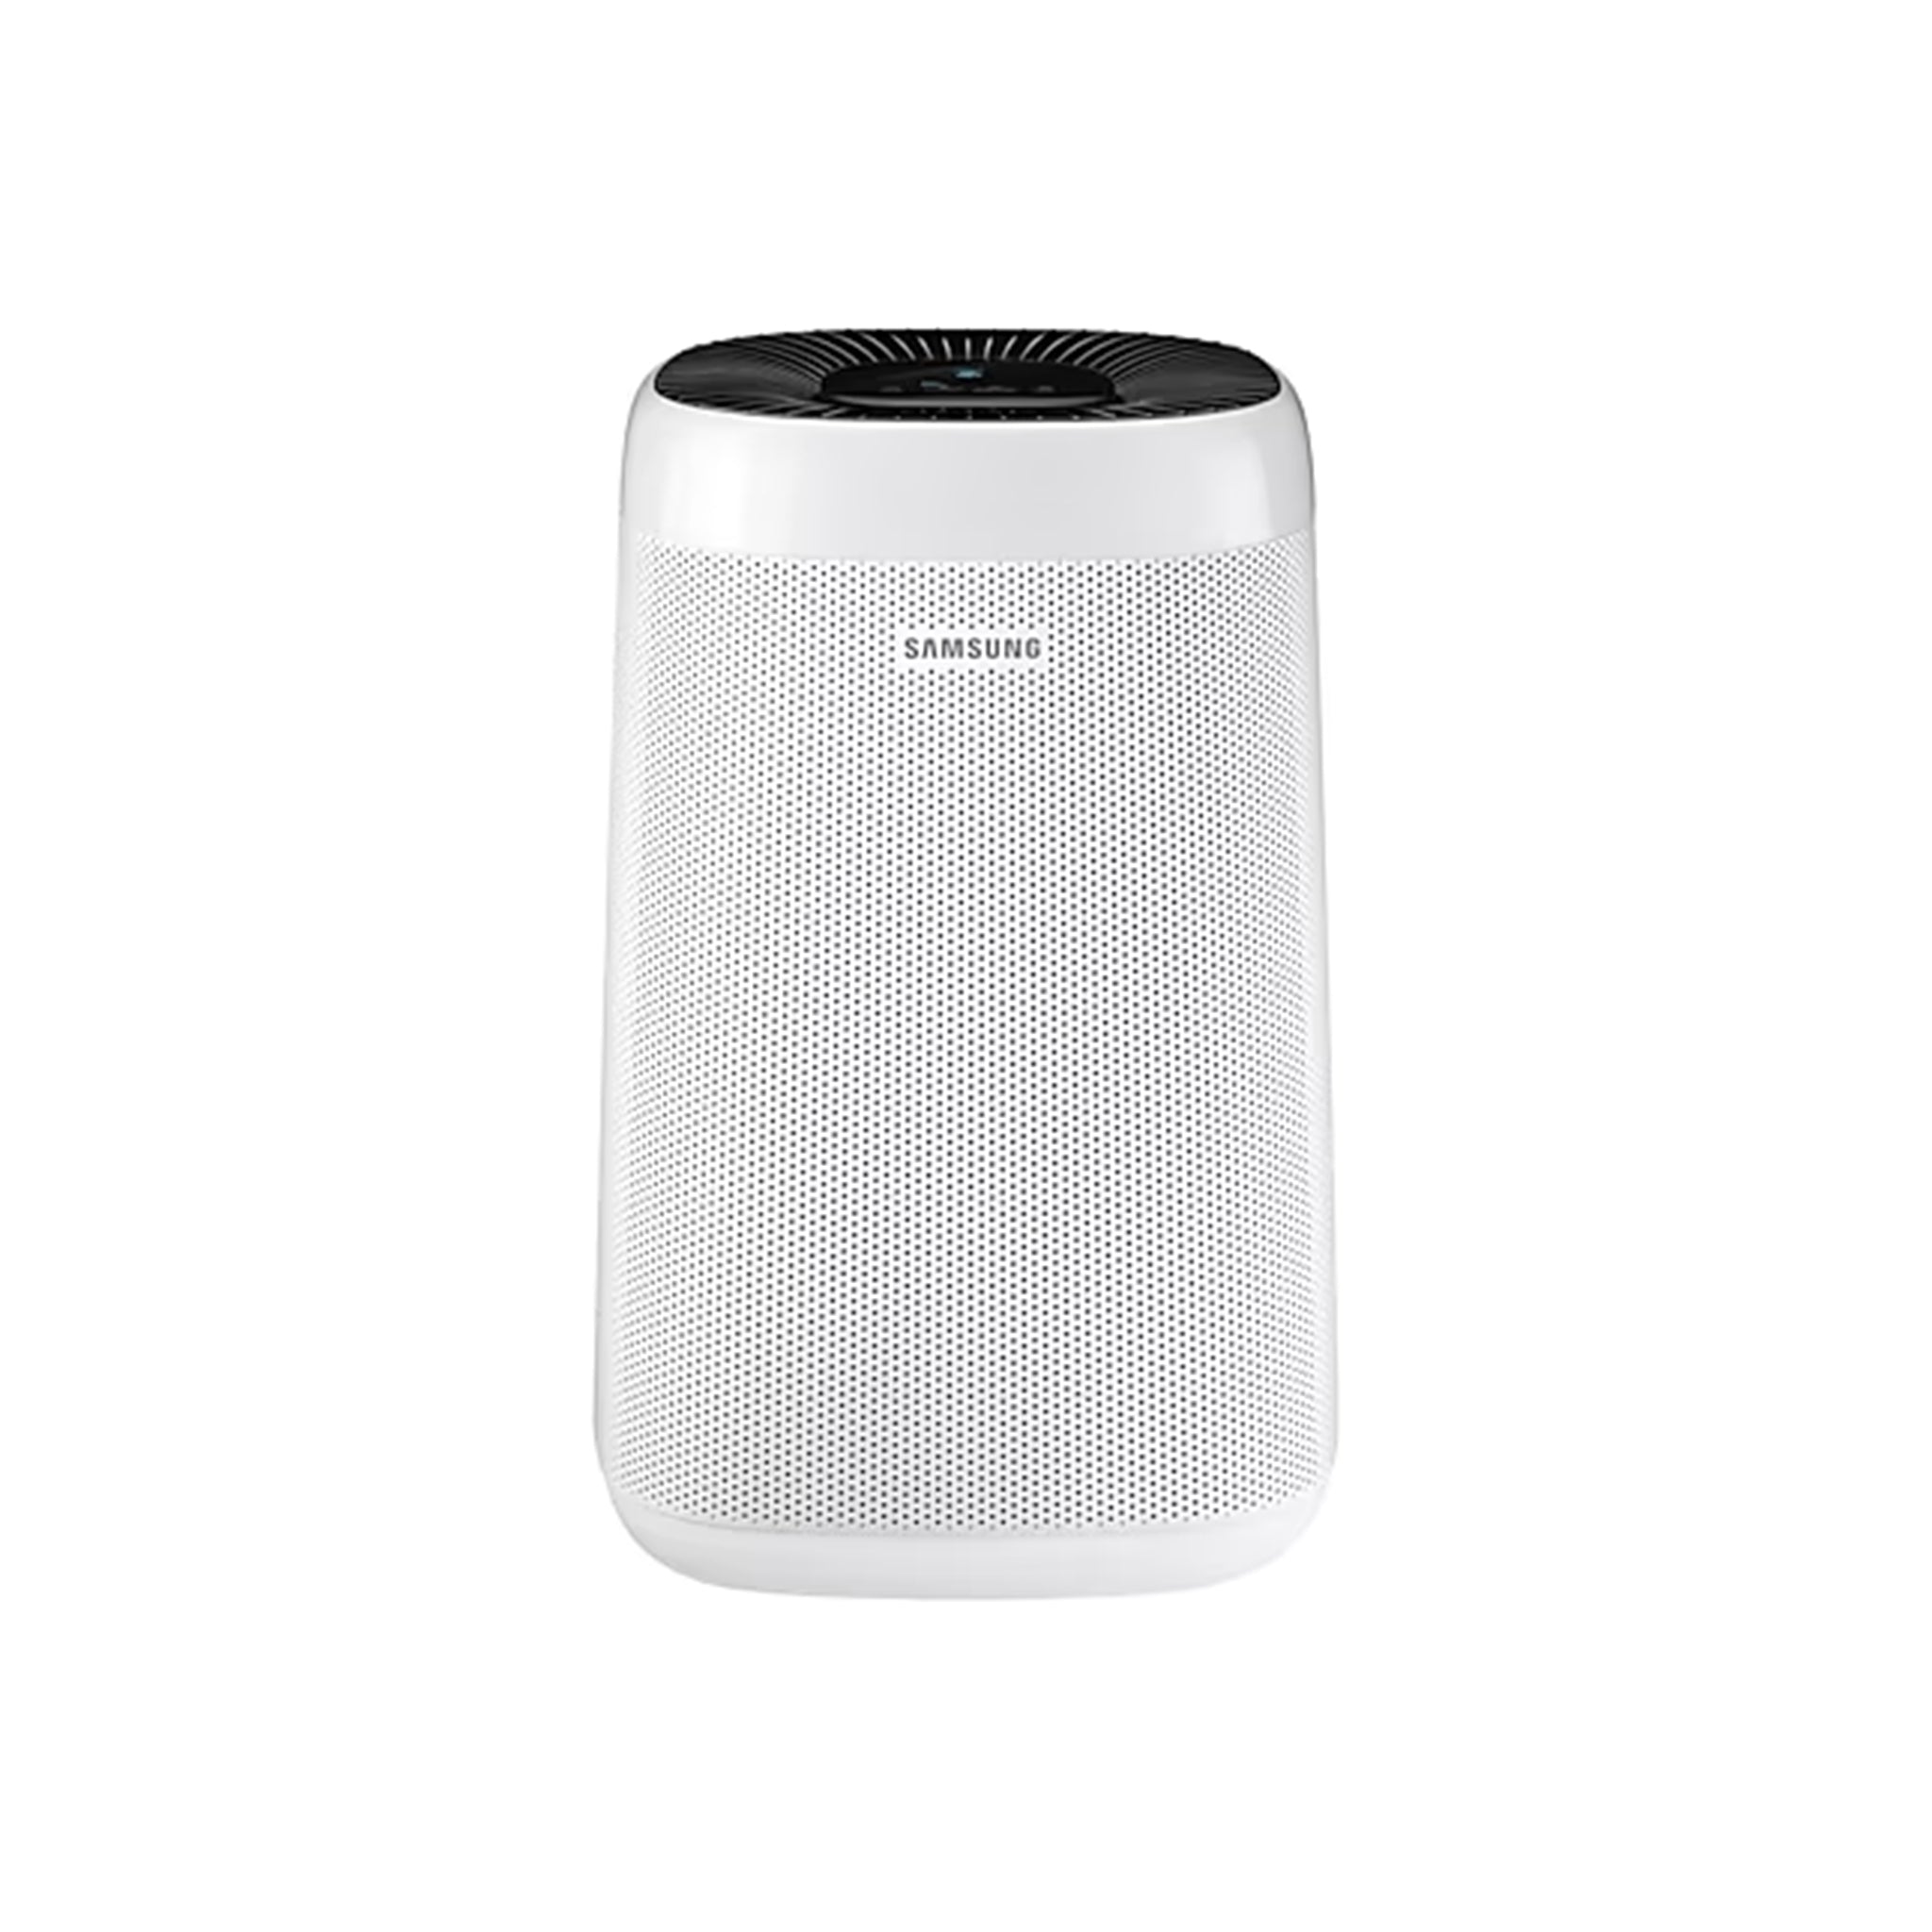 SAMSUNG AX34T3020WW 34 SQM Air Purifier Air Conditioner Samsung